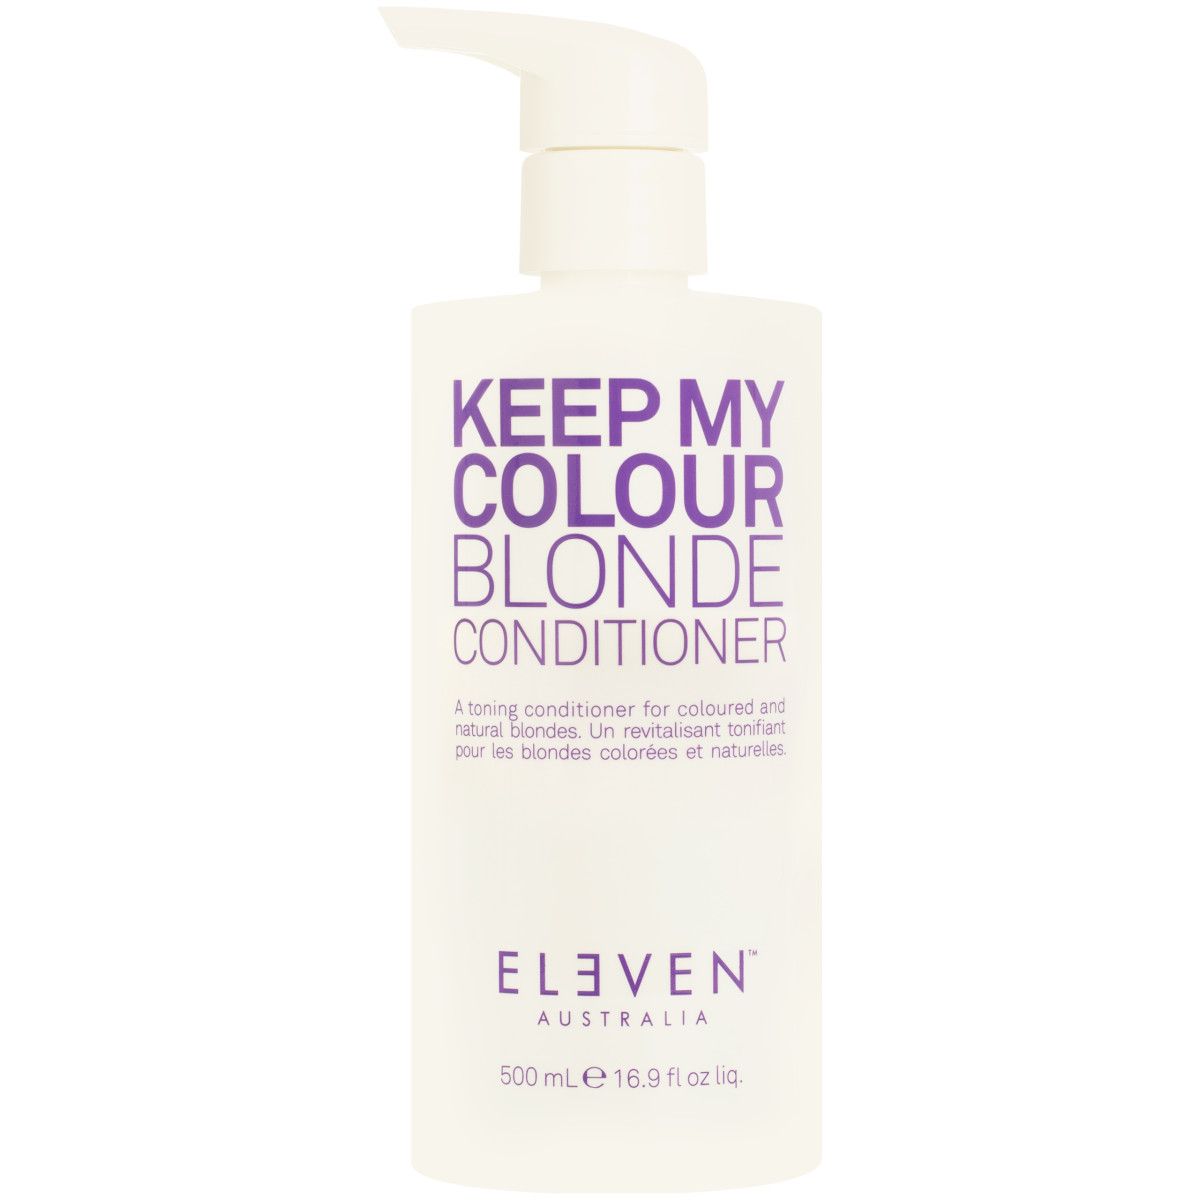 Eleven Australia Keep My Colour Blonde Conditioner - odżywka do włosów farbowanych blond, 500ml